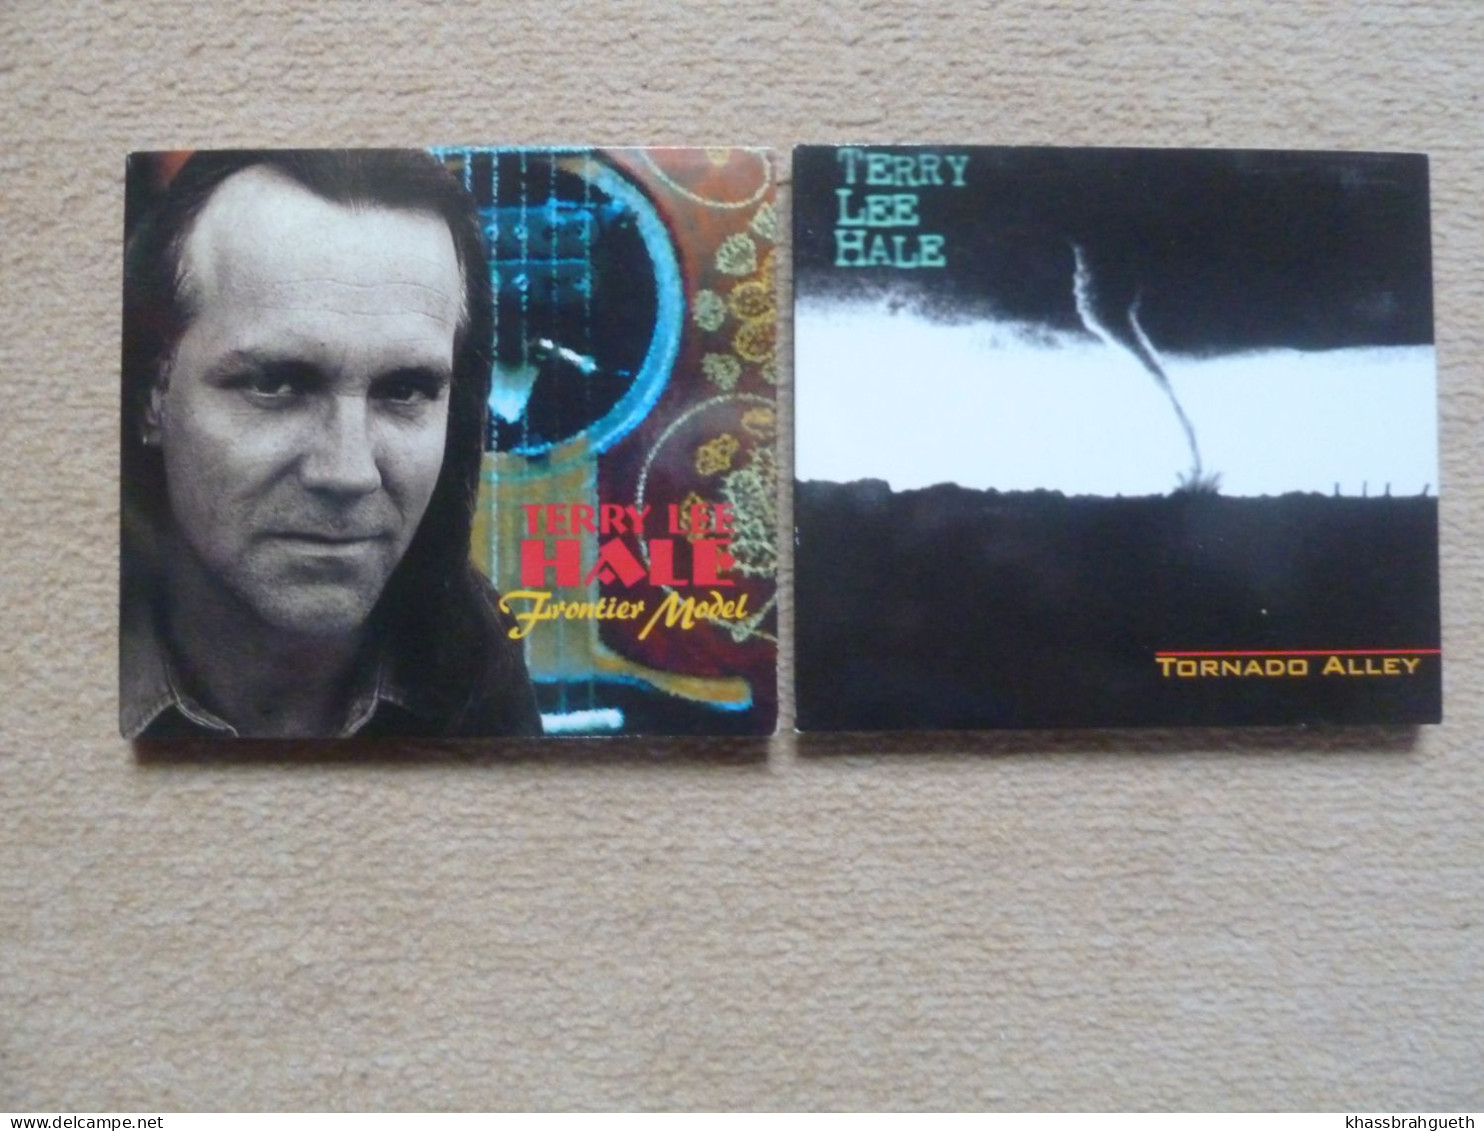 TERRY LEE HALE - 2 CD ALBUMS - FRONTIER MODEL + TORNADO ALLEY - GLITTERHOUSE RECORDS (1994/1995) - Country En Folk